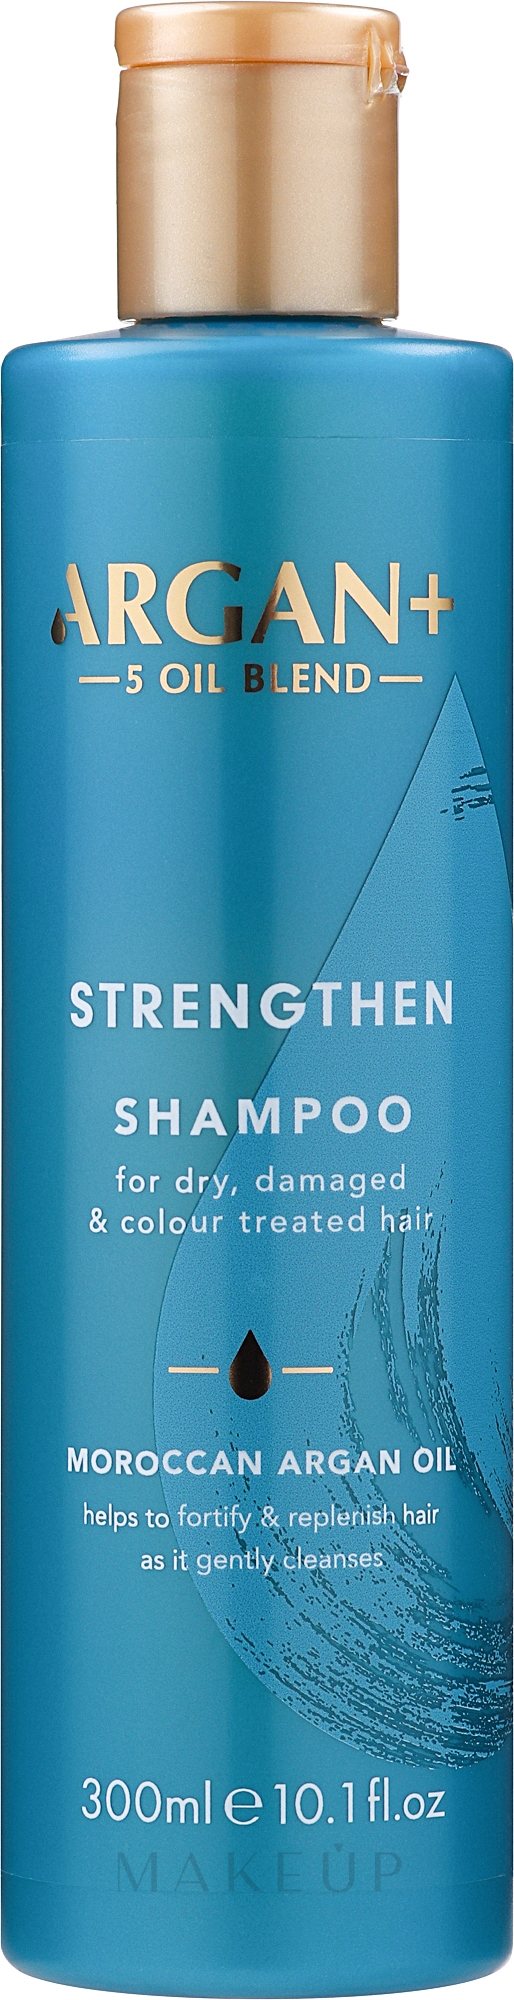 Shampoo für trockenes, geschädigtes und gefärbtes Haar mit Arganöl - Argan+ Strengthen Shampoo Moroccan Argan Oil — Bild 300 ml